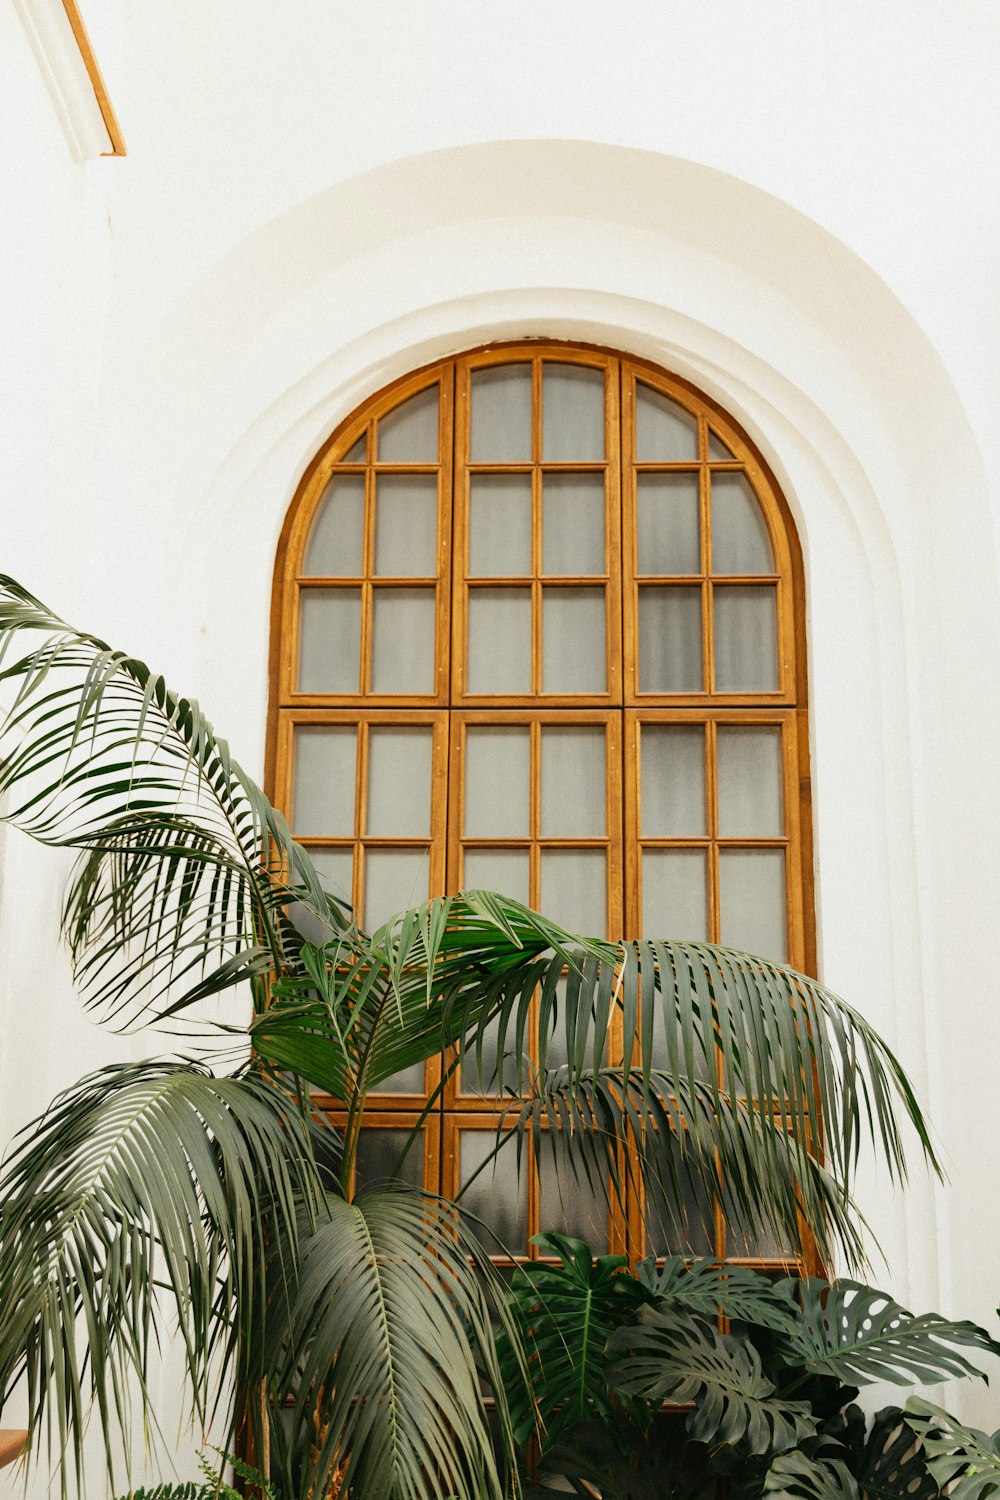 pianta di palma verde accanto alla finestra di vetro incorniciata in legno marrone